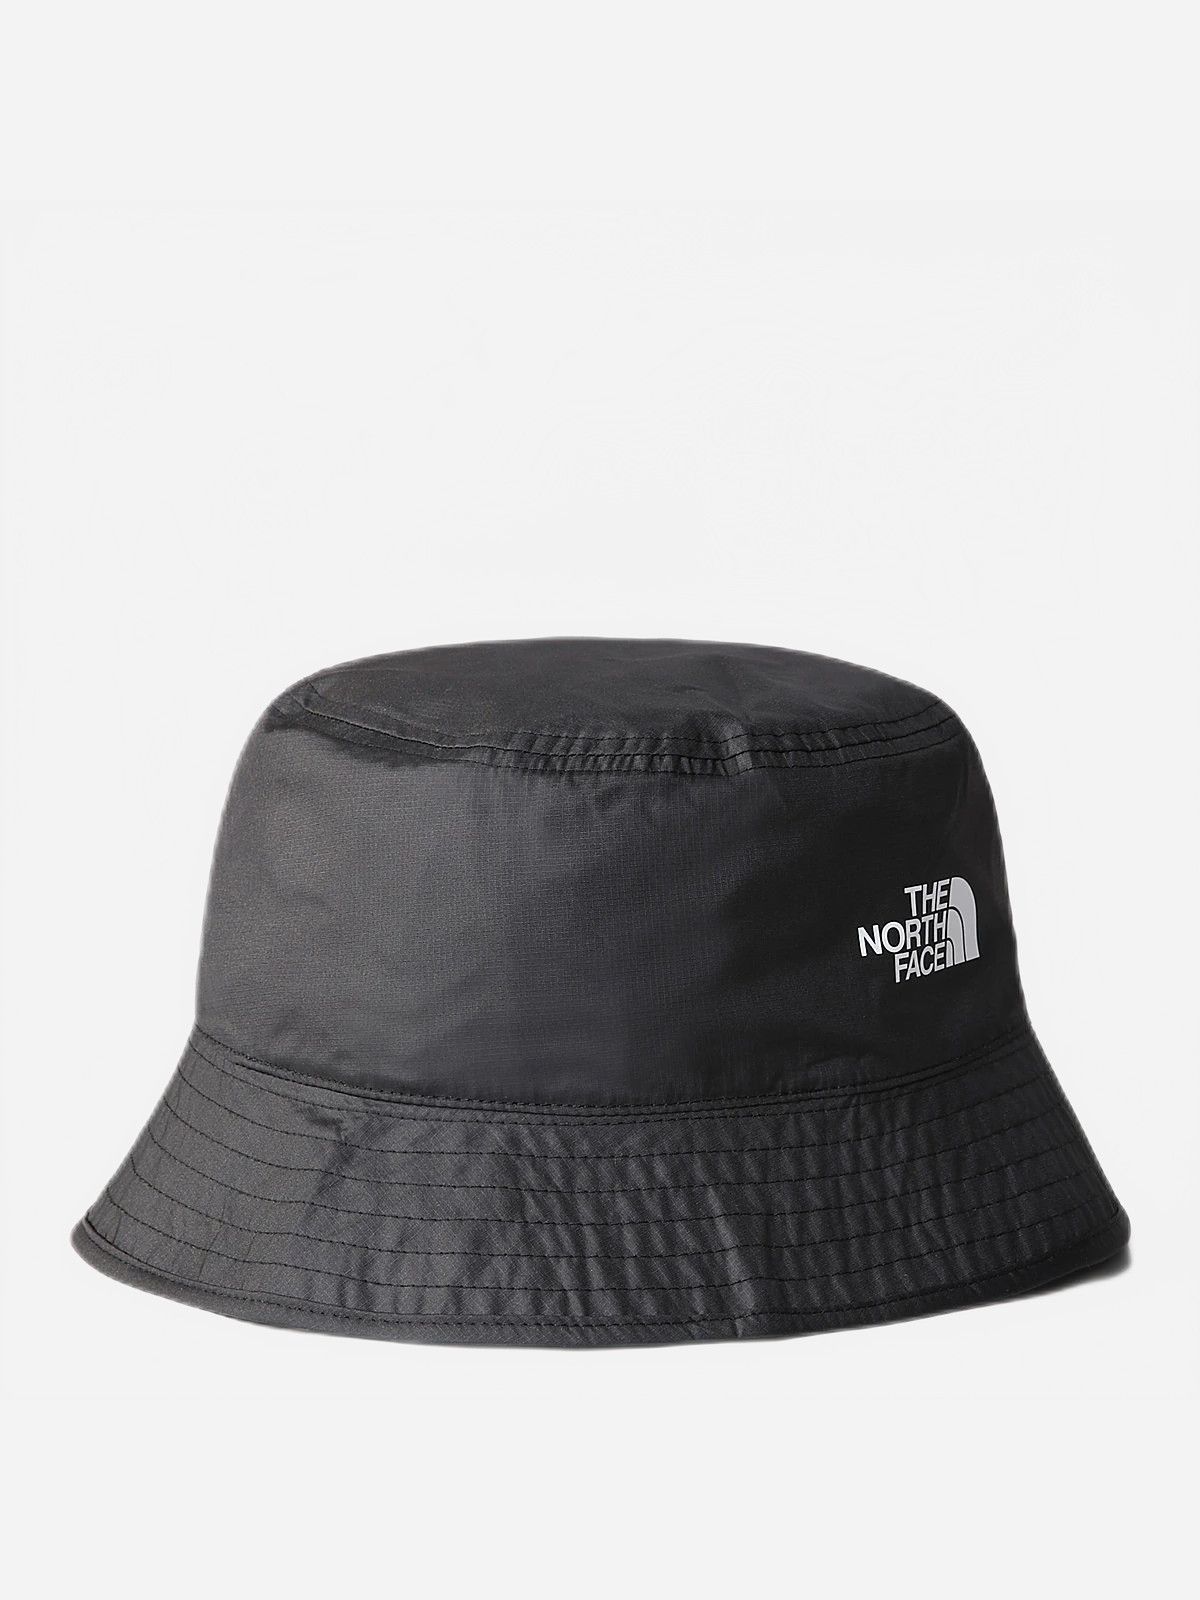  כובע SUN STASH REVERSIBLE / גברים של THE NORTH FACE